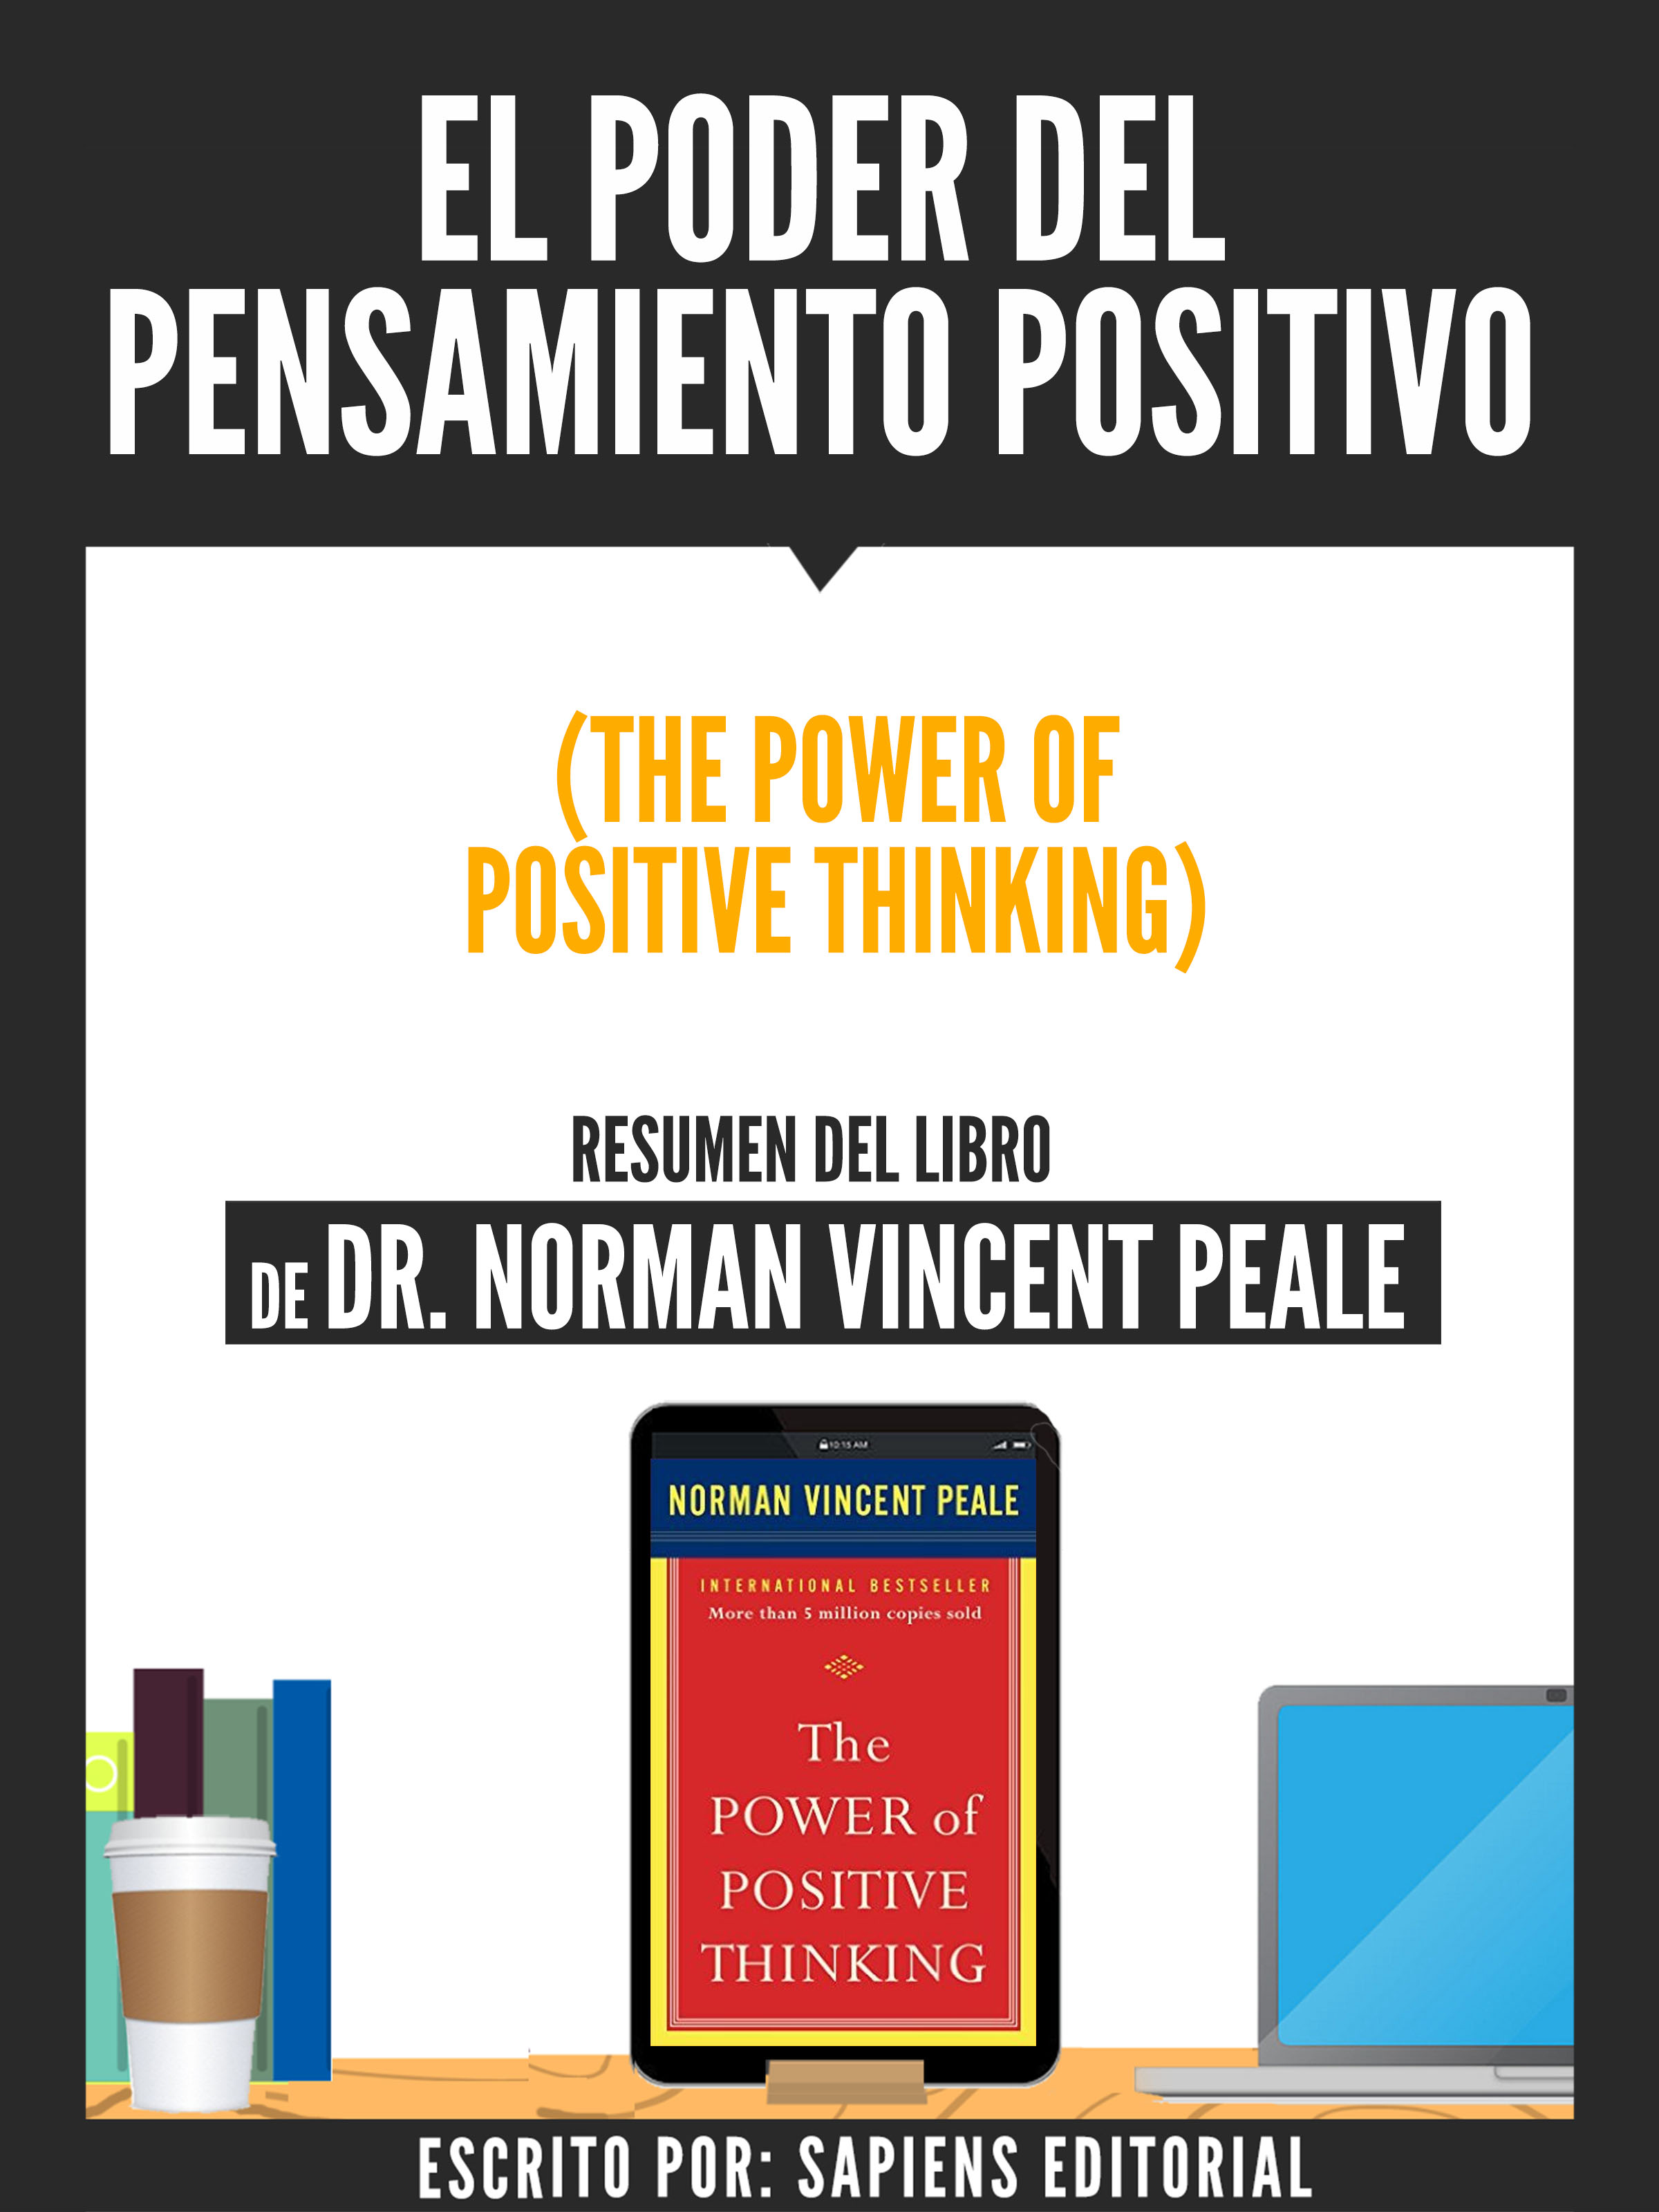 El poder del pensamiento positivo pdf norman vincent peale videos online